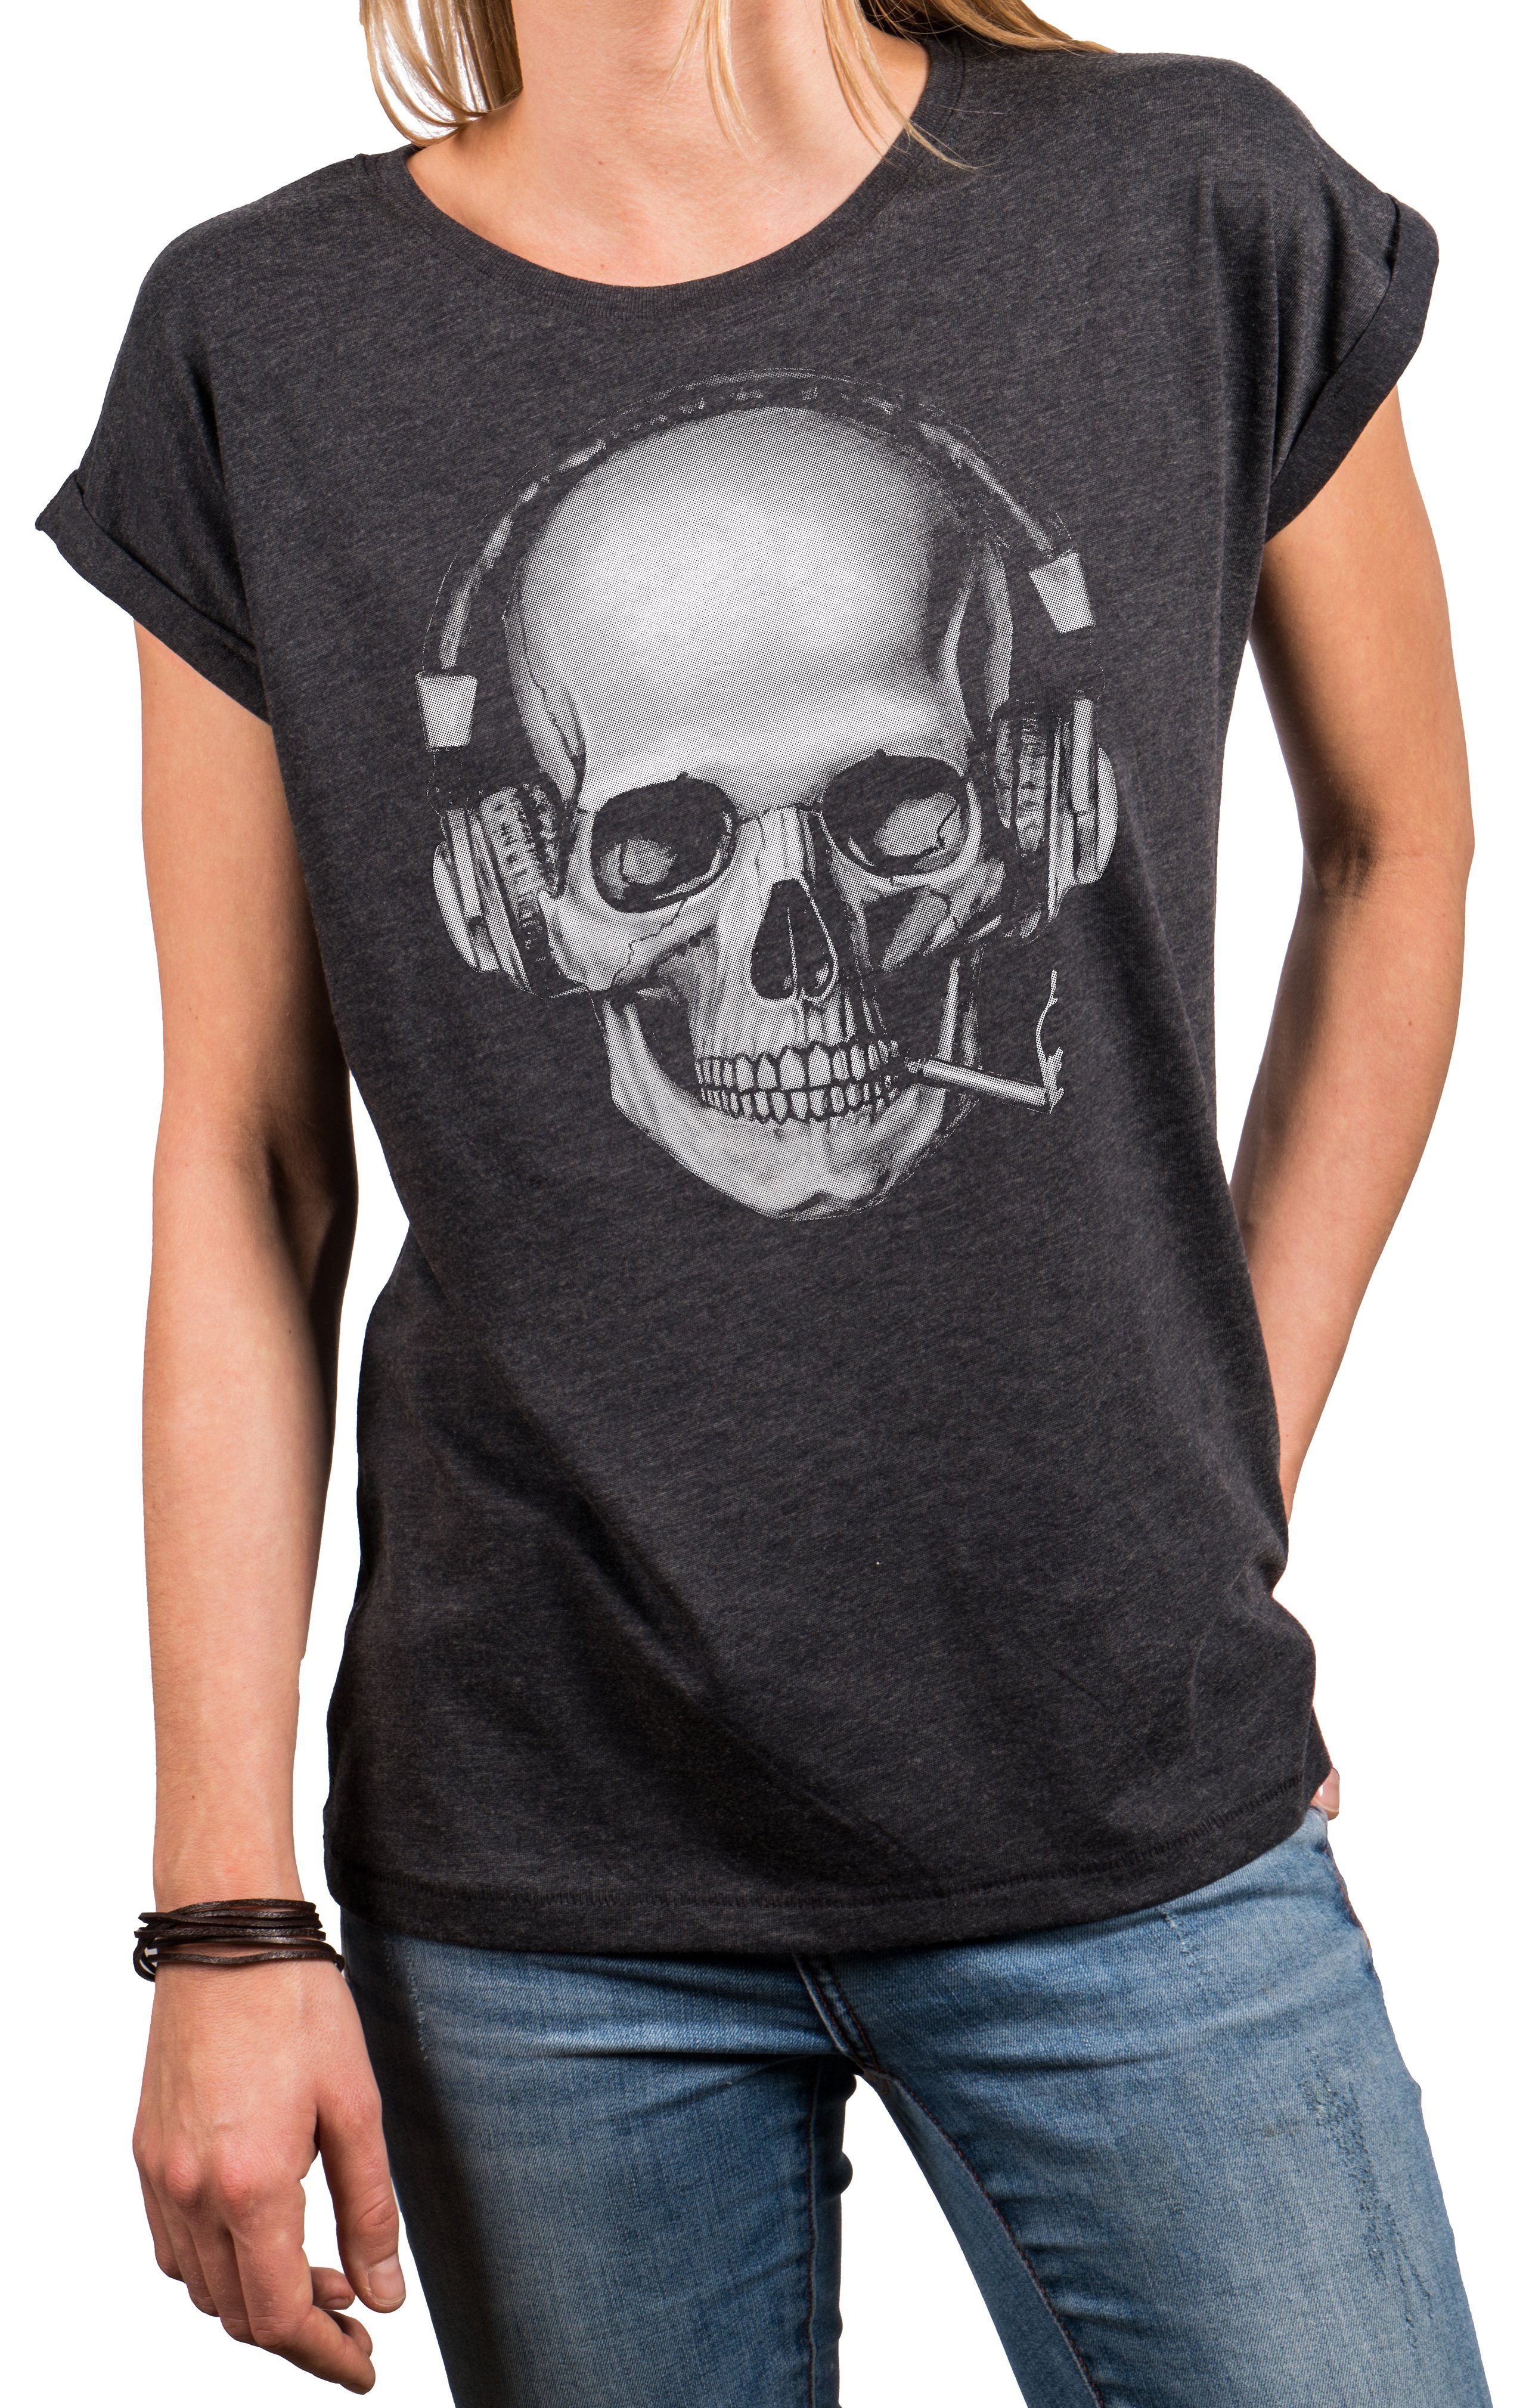 MAKAYA Print-Shirt Damen Cooles T-Shirt mit Totenkopf Design Skull Top - Aufdruck Gothic (Kurzarm, Rundhals, Schwarz, Blau, Grau) Baumwolle, große Größen